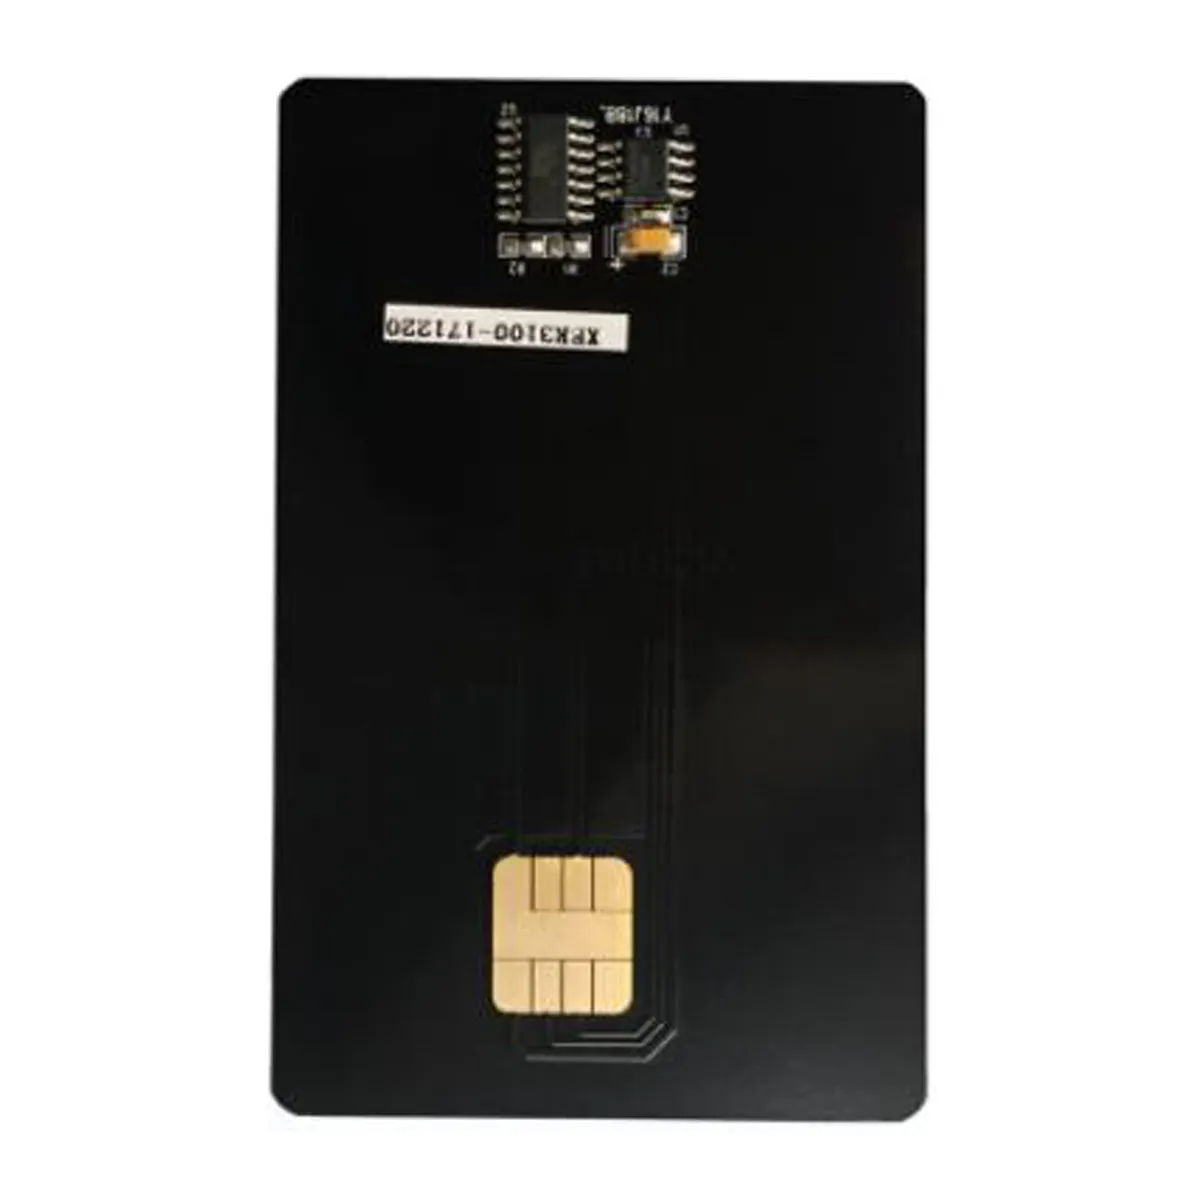 XEROX phaser 3100MFP toner cips card106R01378 106R01379 akıllı kart için sıfırlama